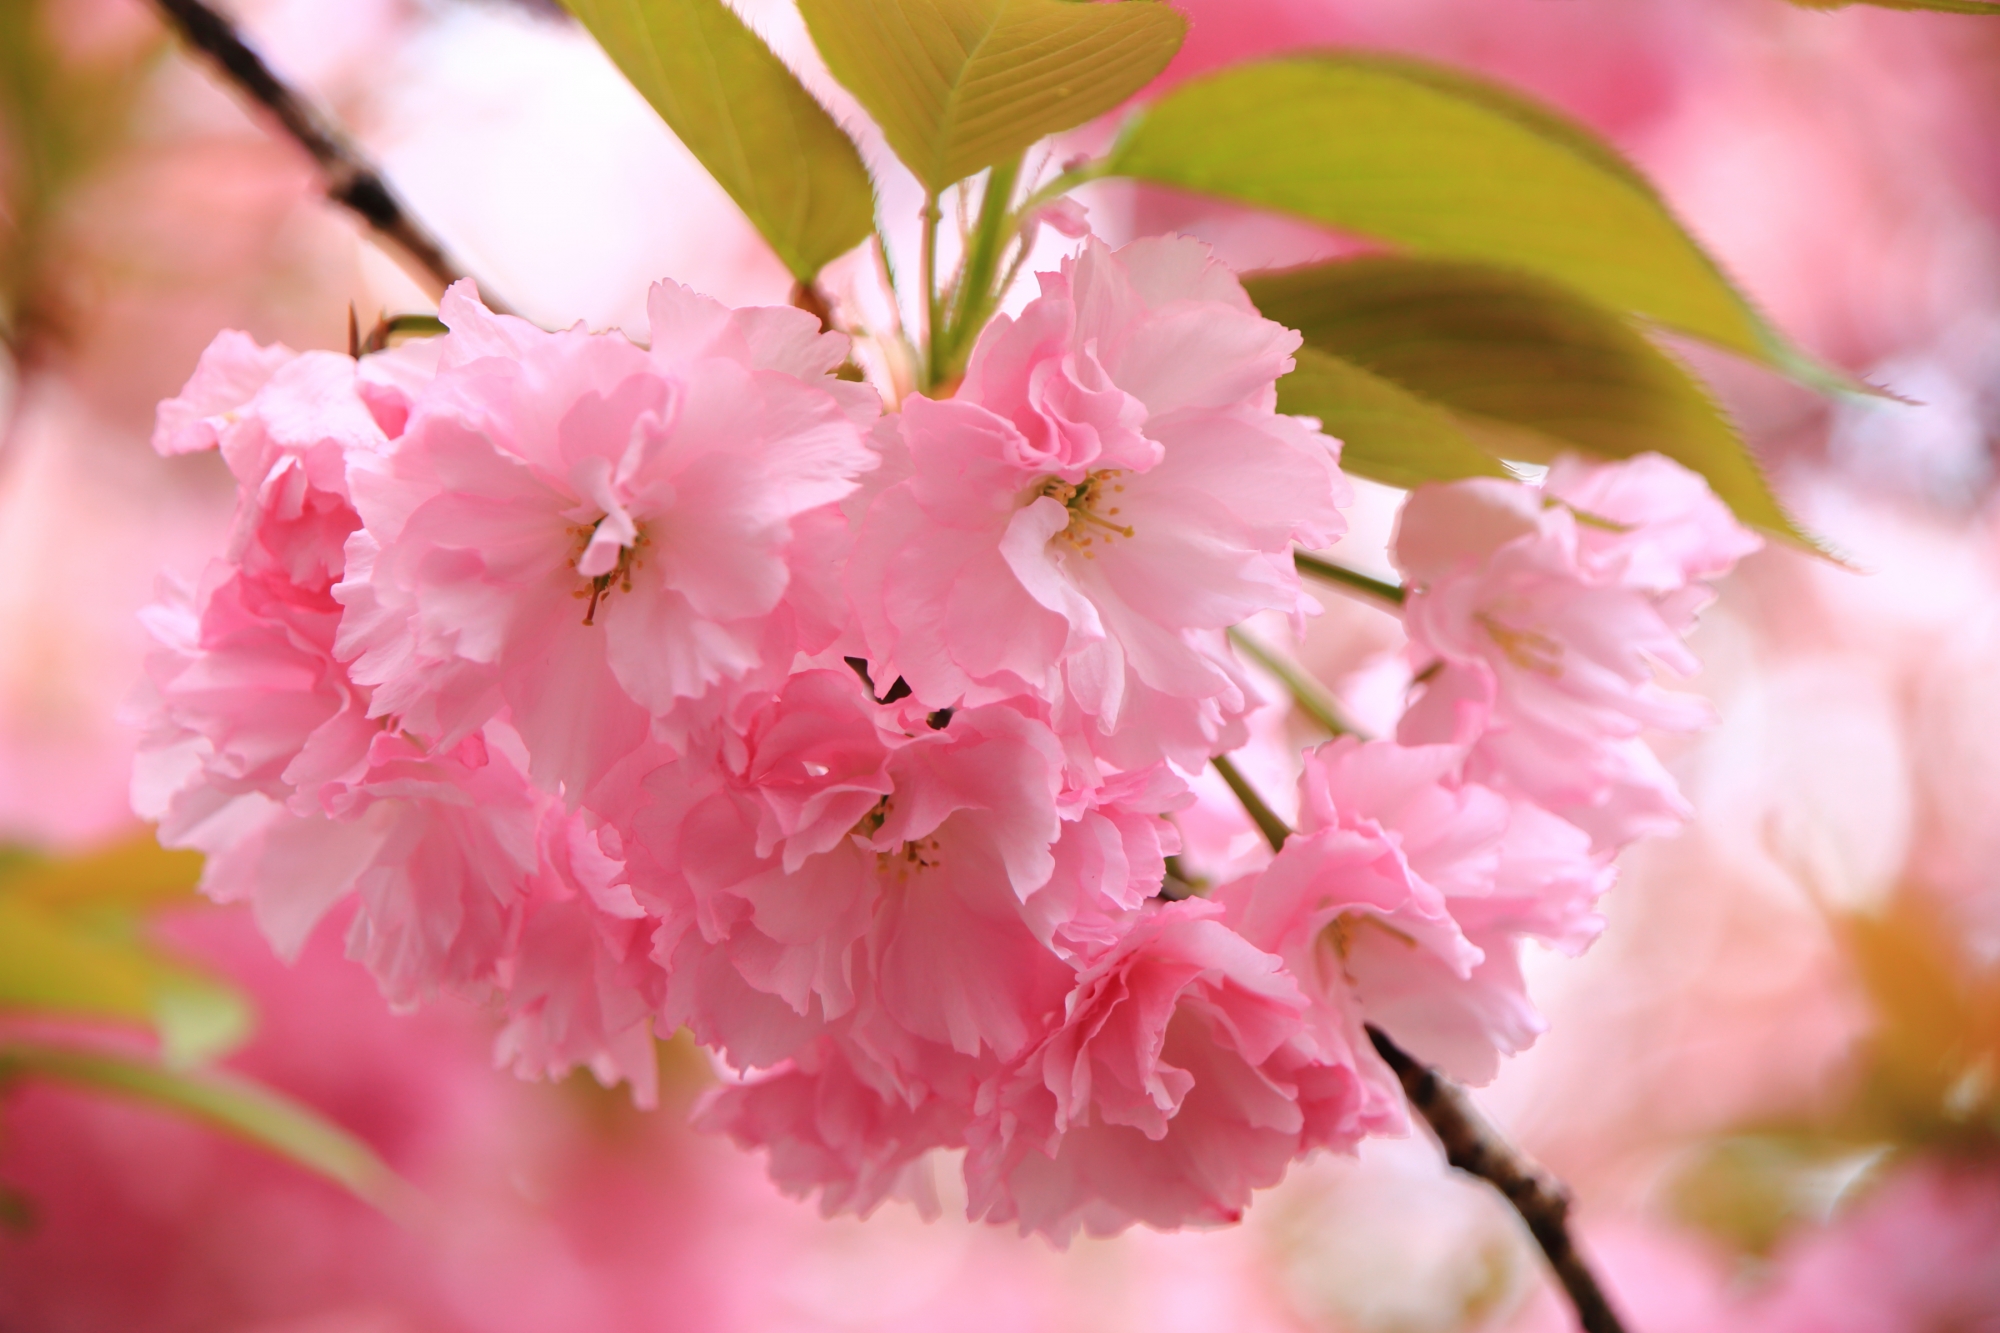 花びら一枚一枚は微妙に色合いが違う八重桜